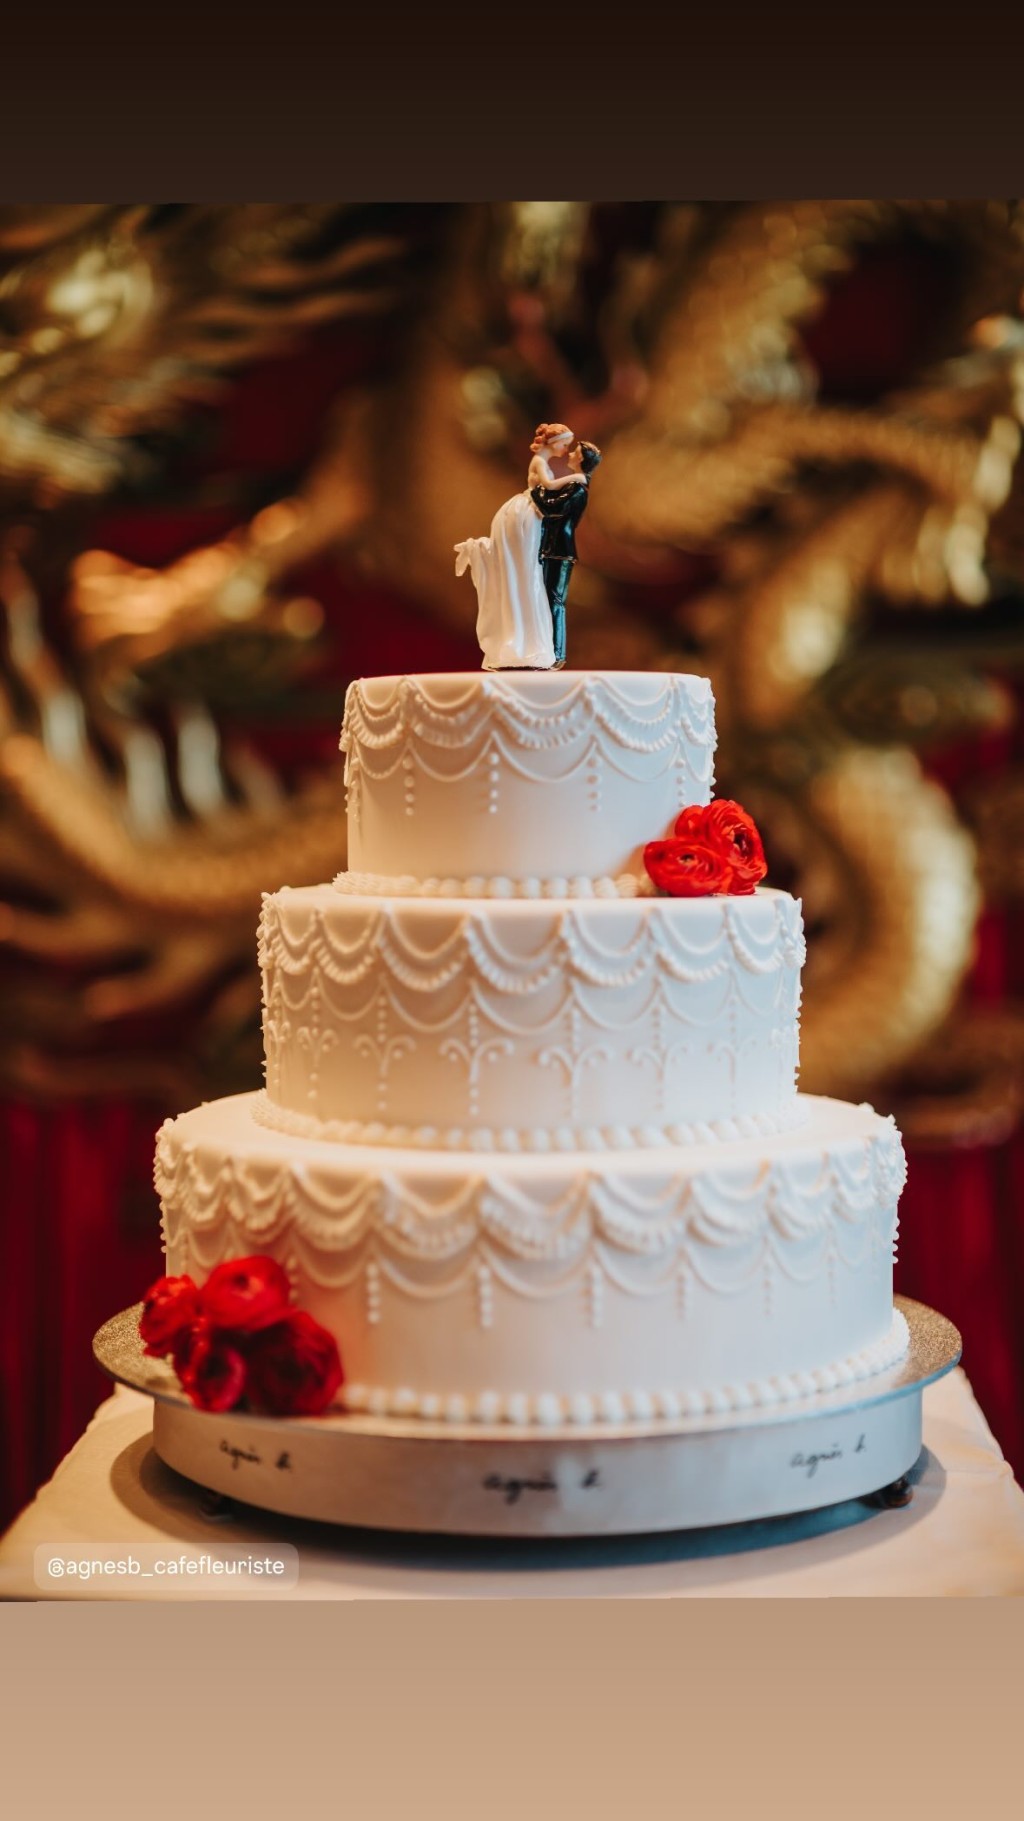 结婚蛋糕很传统。